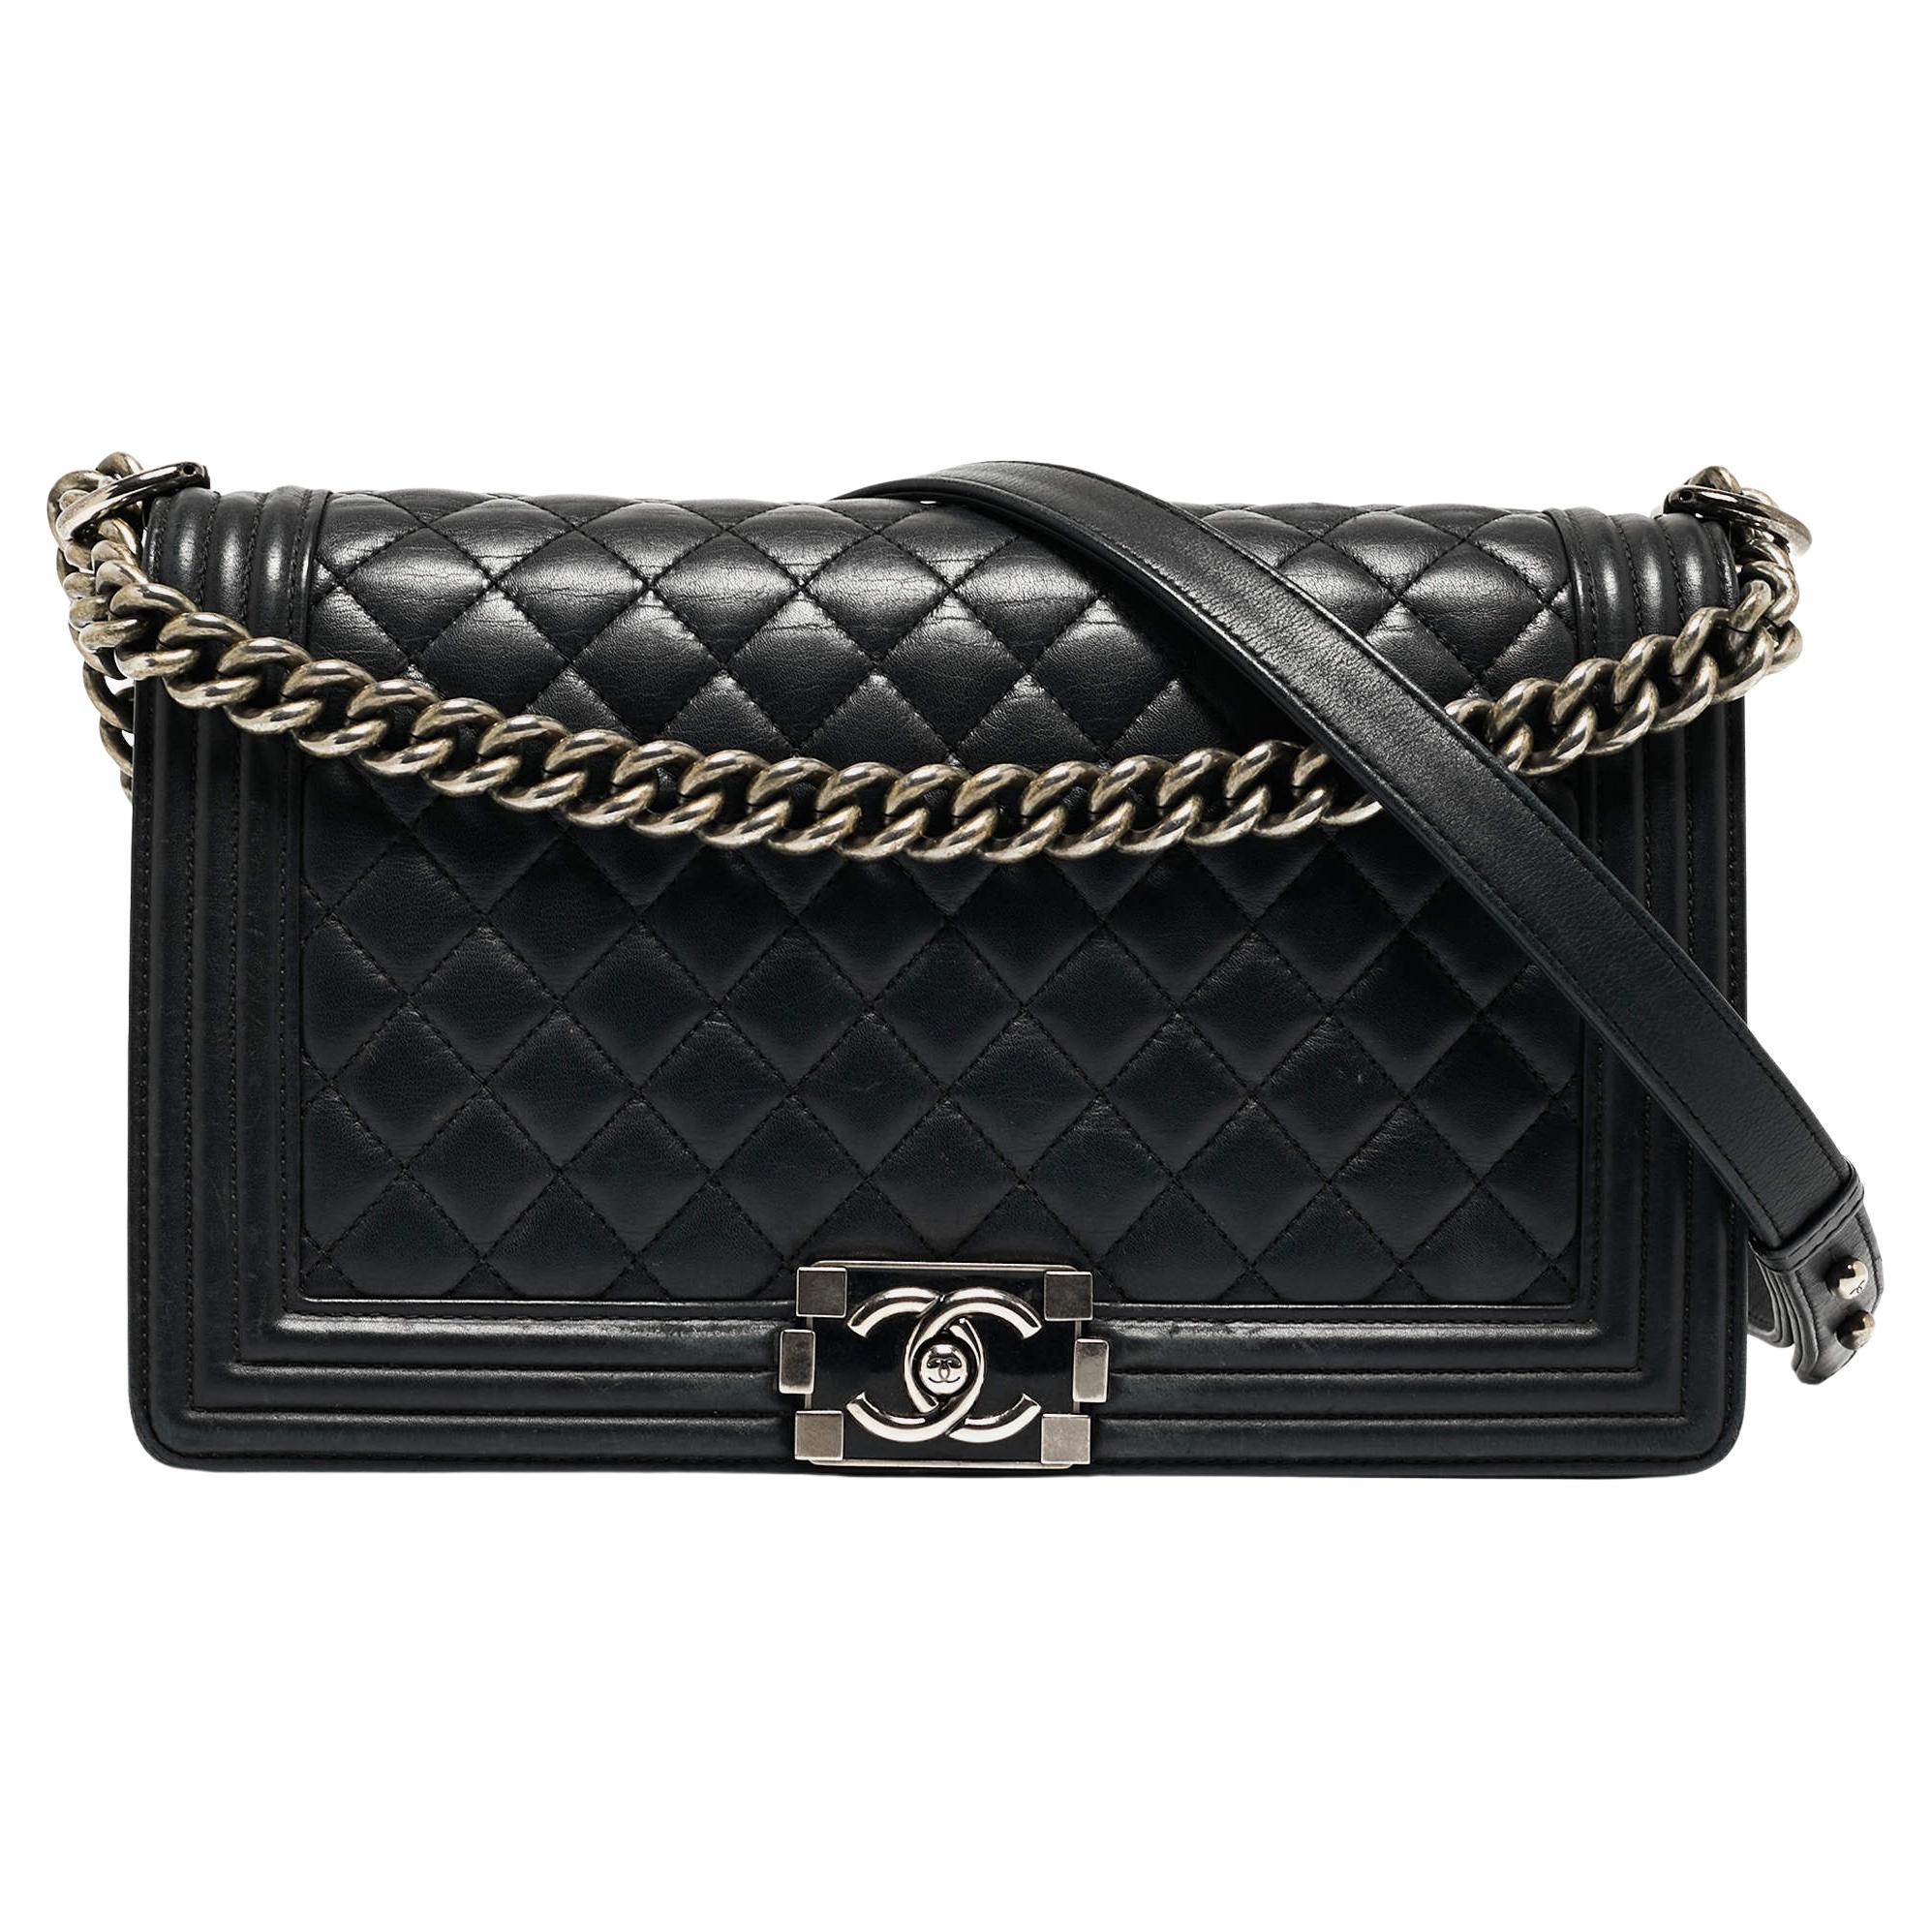 Chanel Black Quilted Leather New Medium Boy Shoulder Bag For Sale